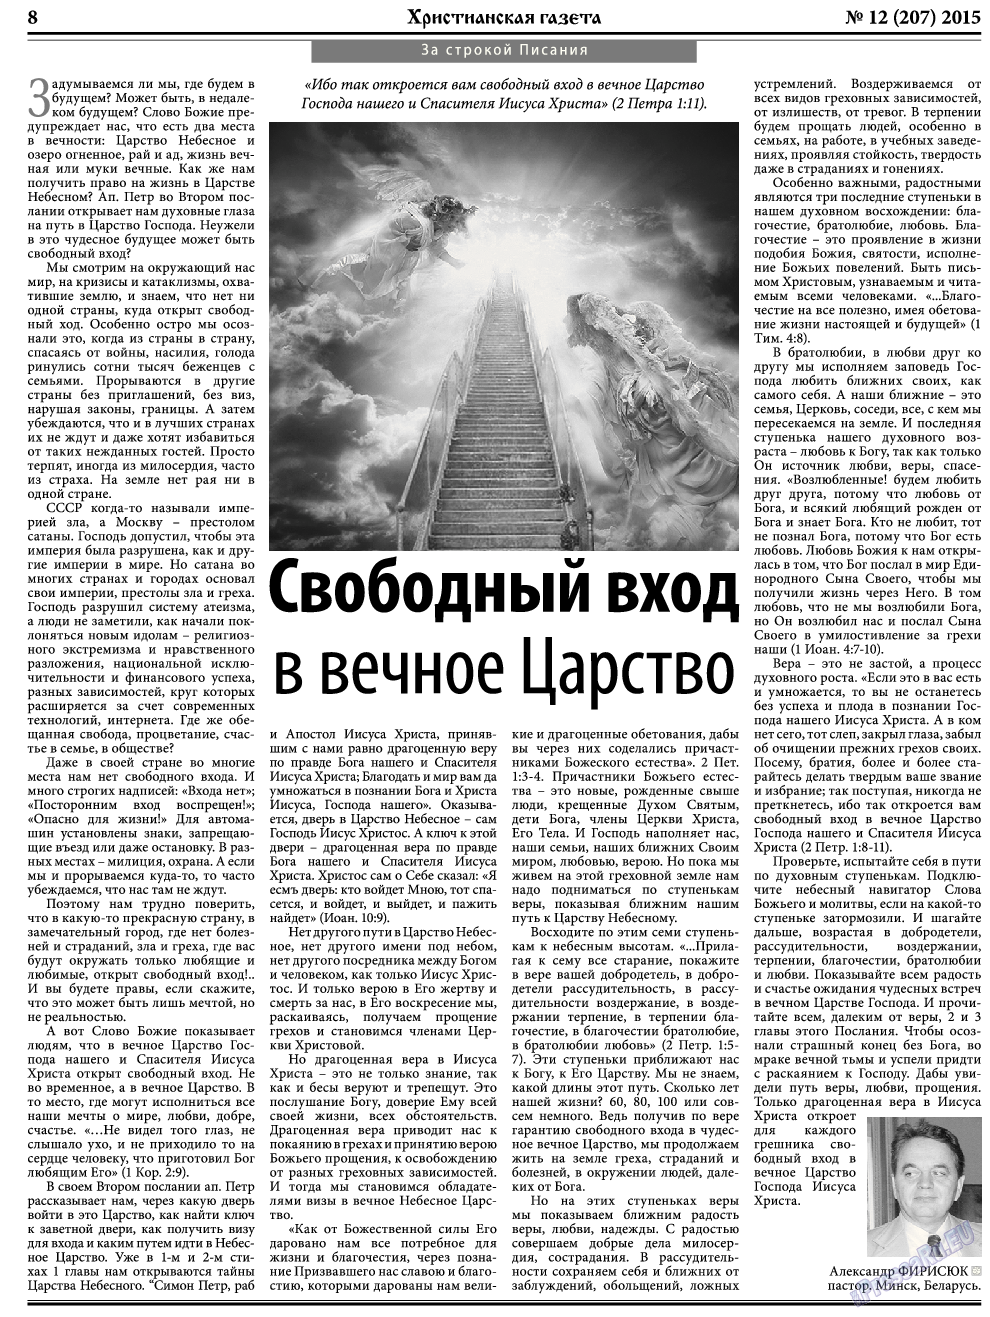 Христианская газета, газета. 2015 №12 стр.8